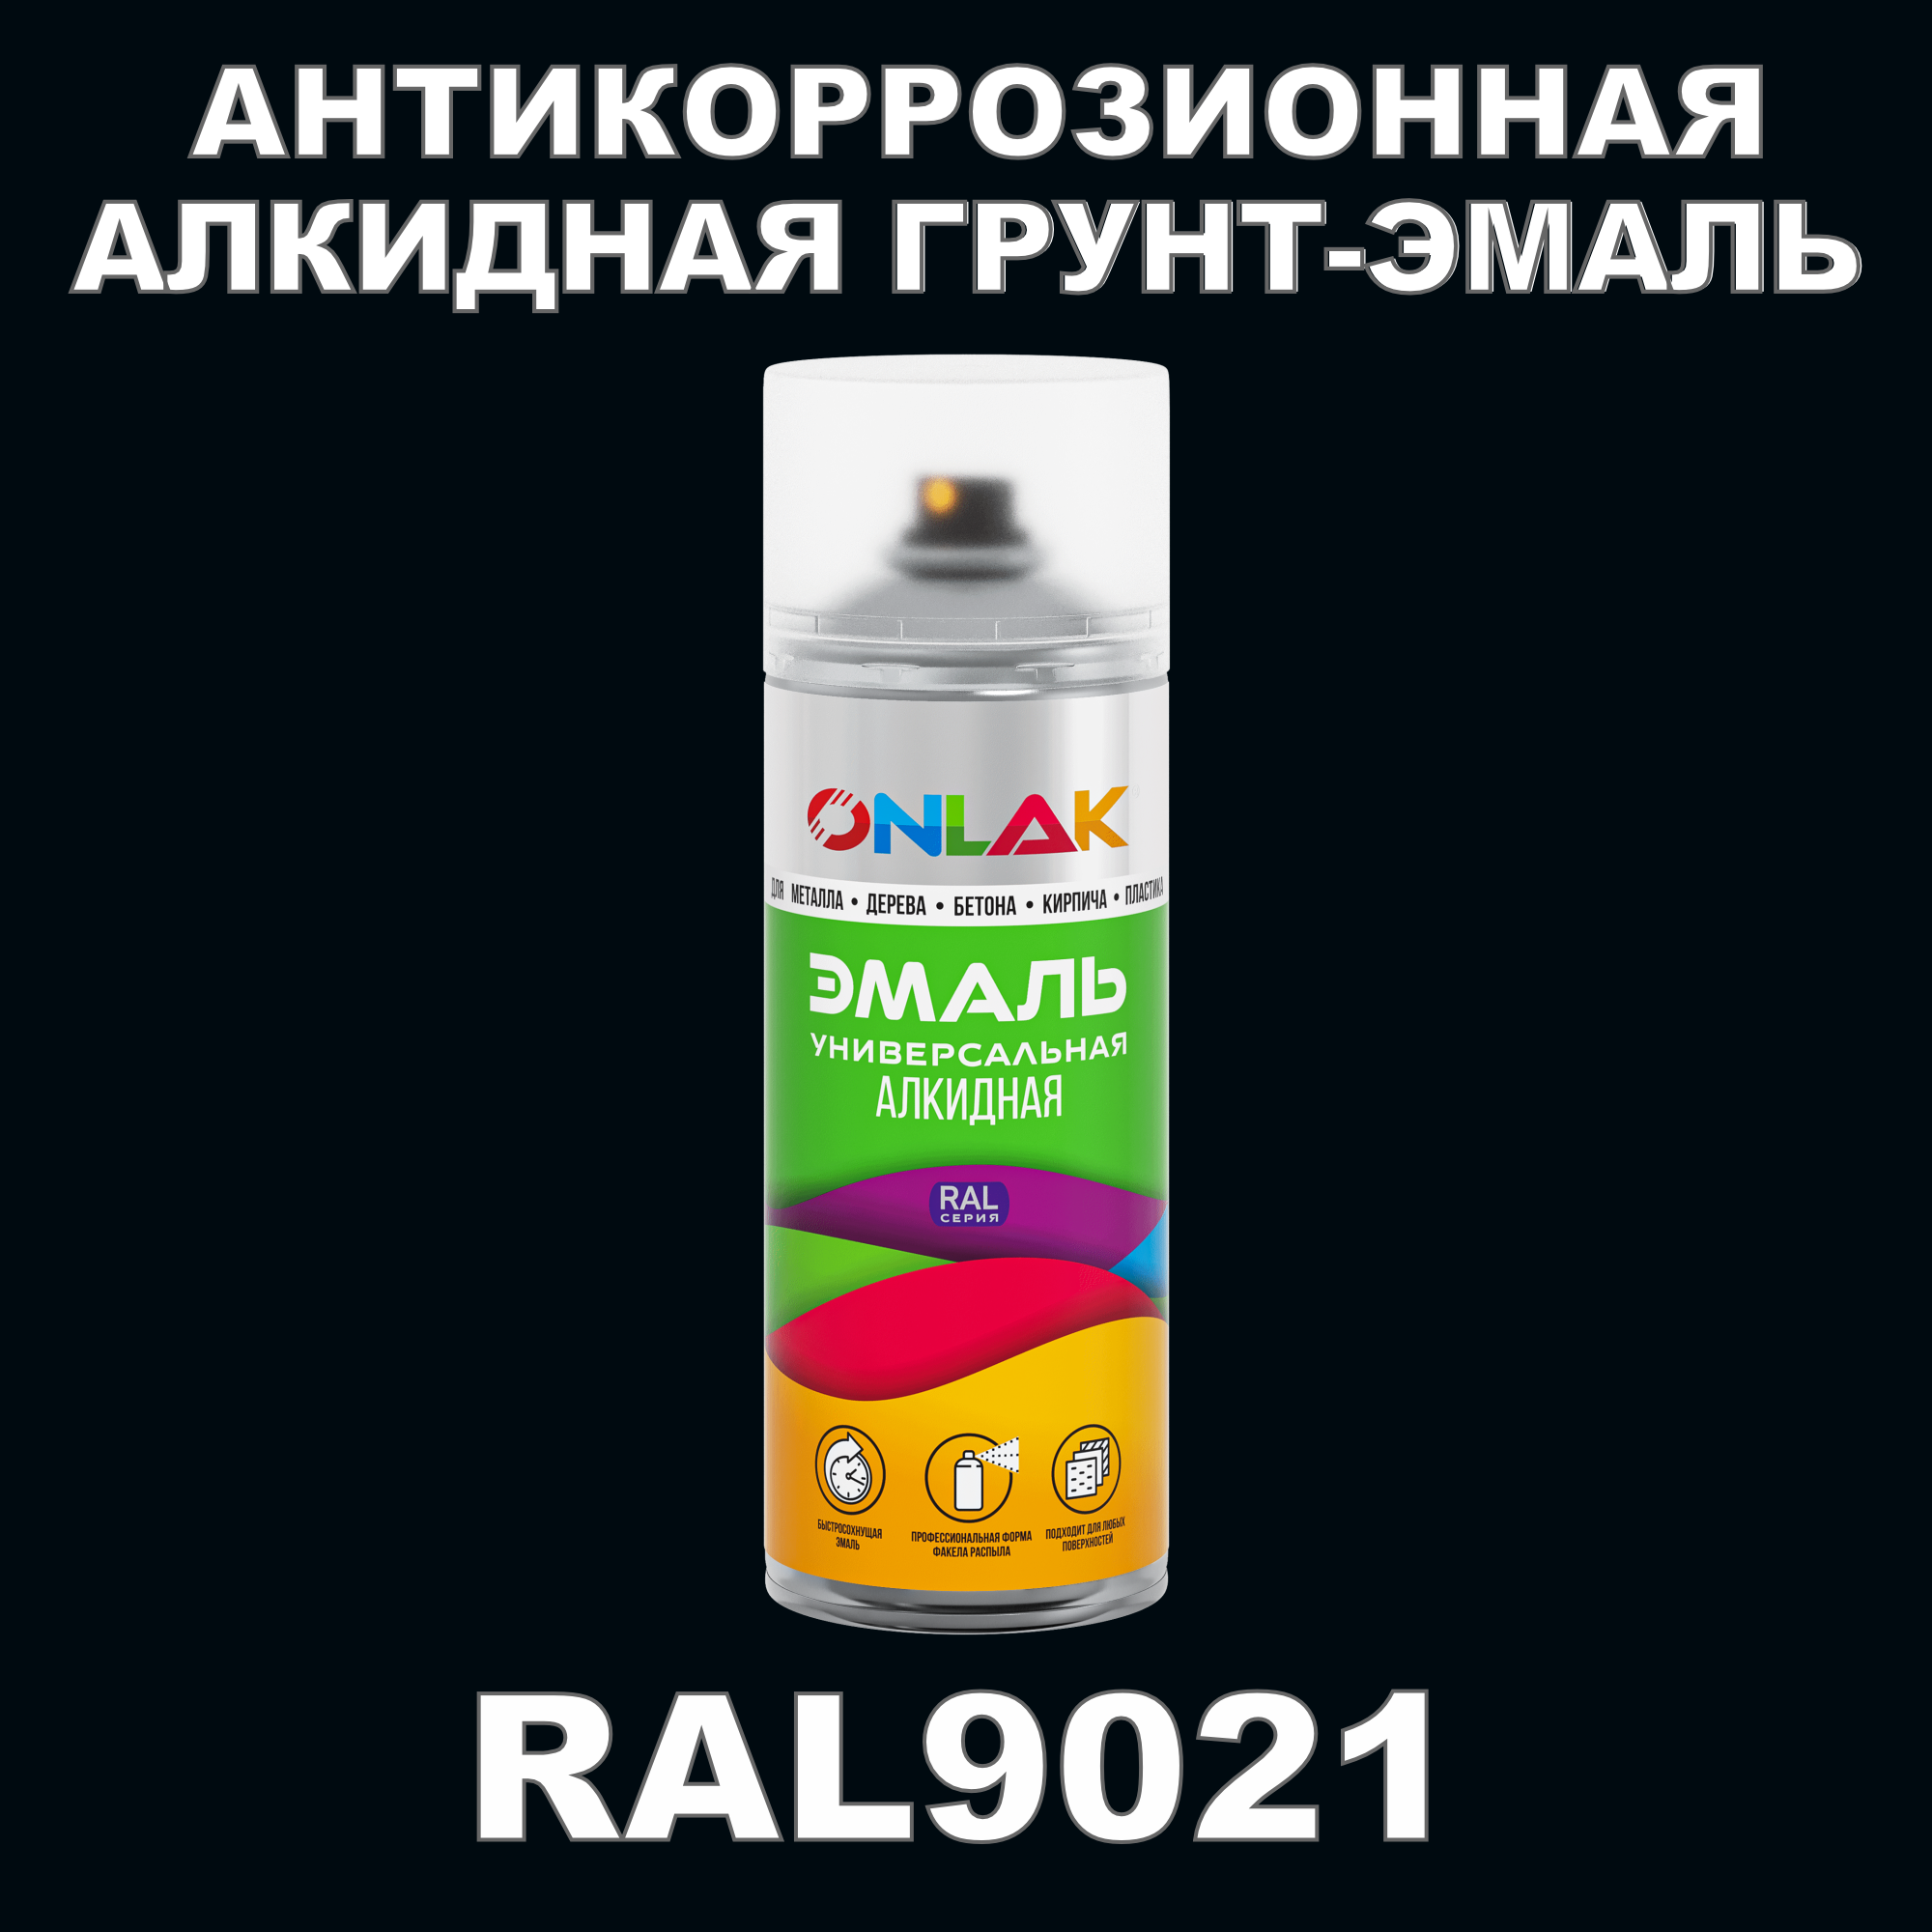 Антикоррозионная грунт-эмаль ONLAK RAL9021 полуматовая для металла и защиты от ржавчины грунт эмаль по ржавчине экодом 3 в 1 полуматовая 10 кг черная